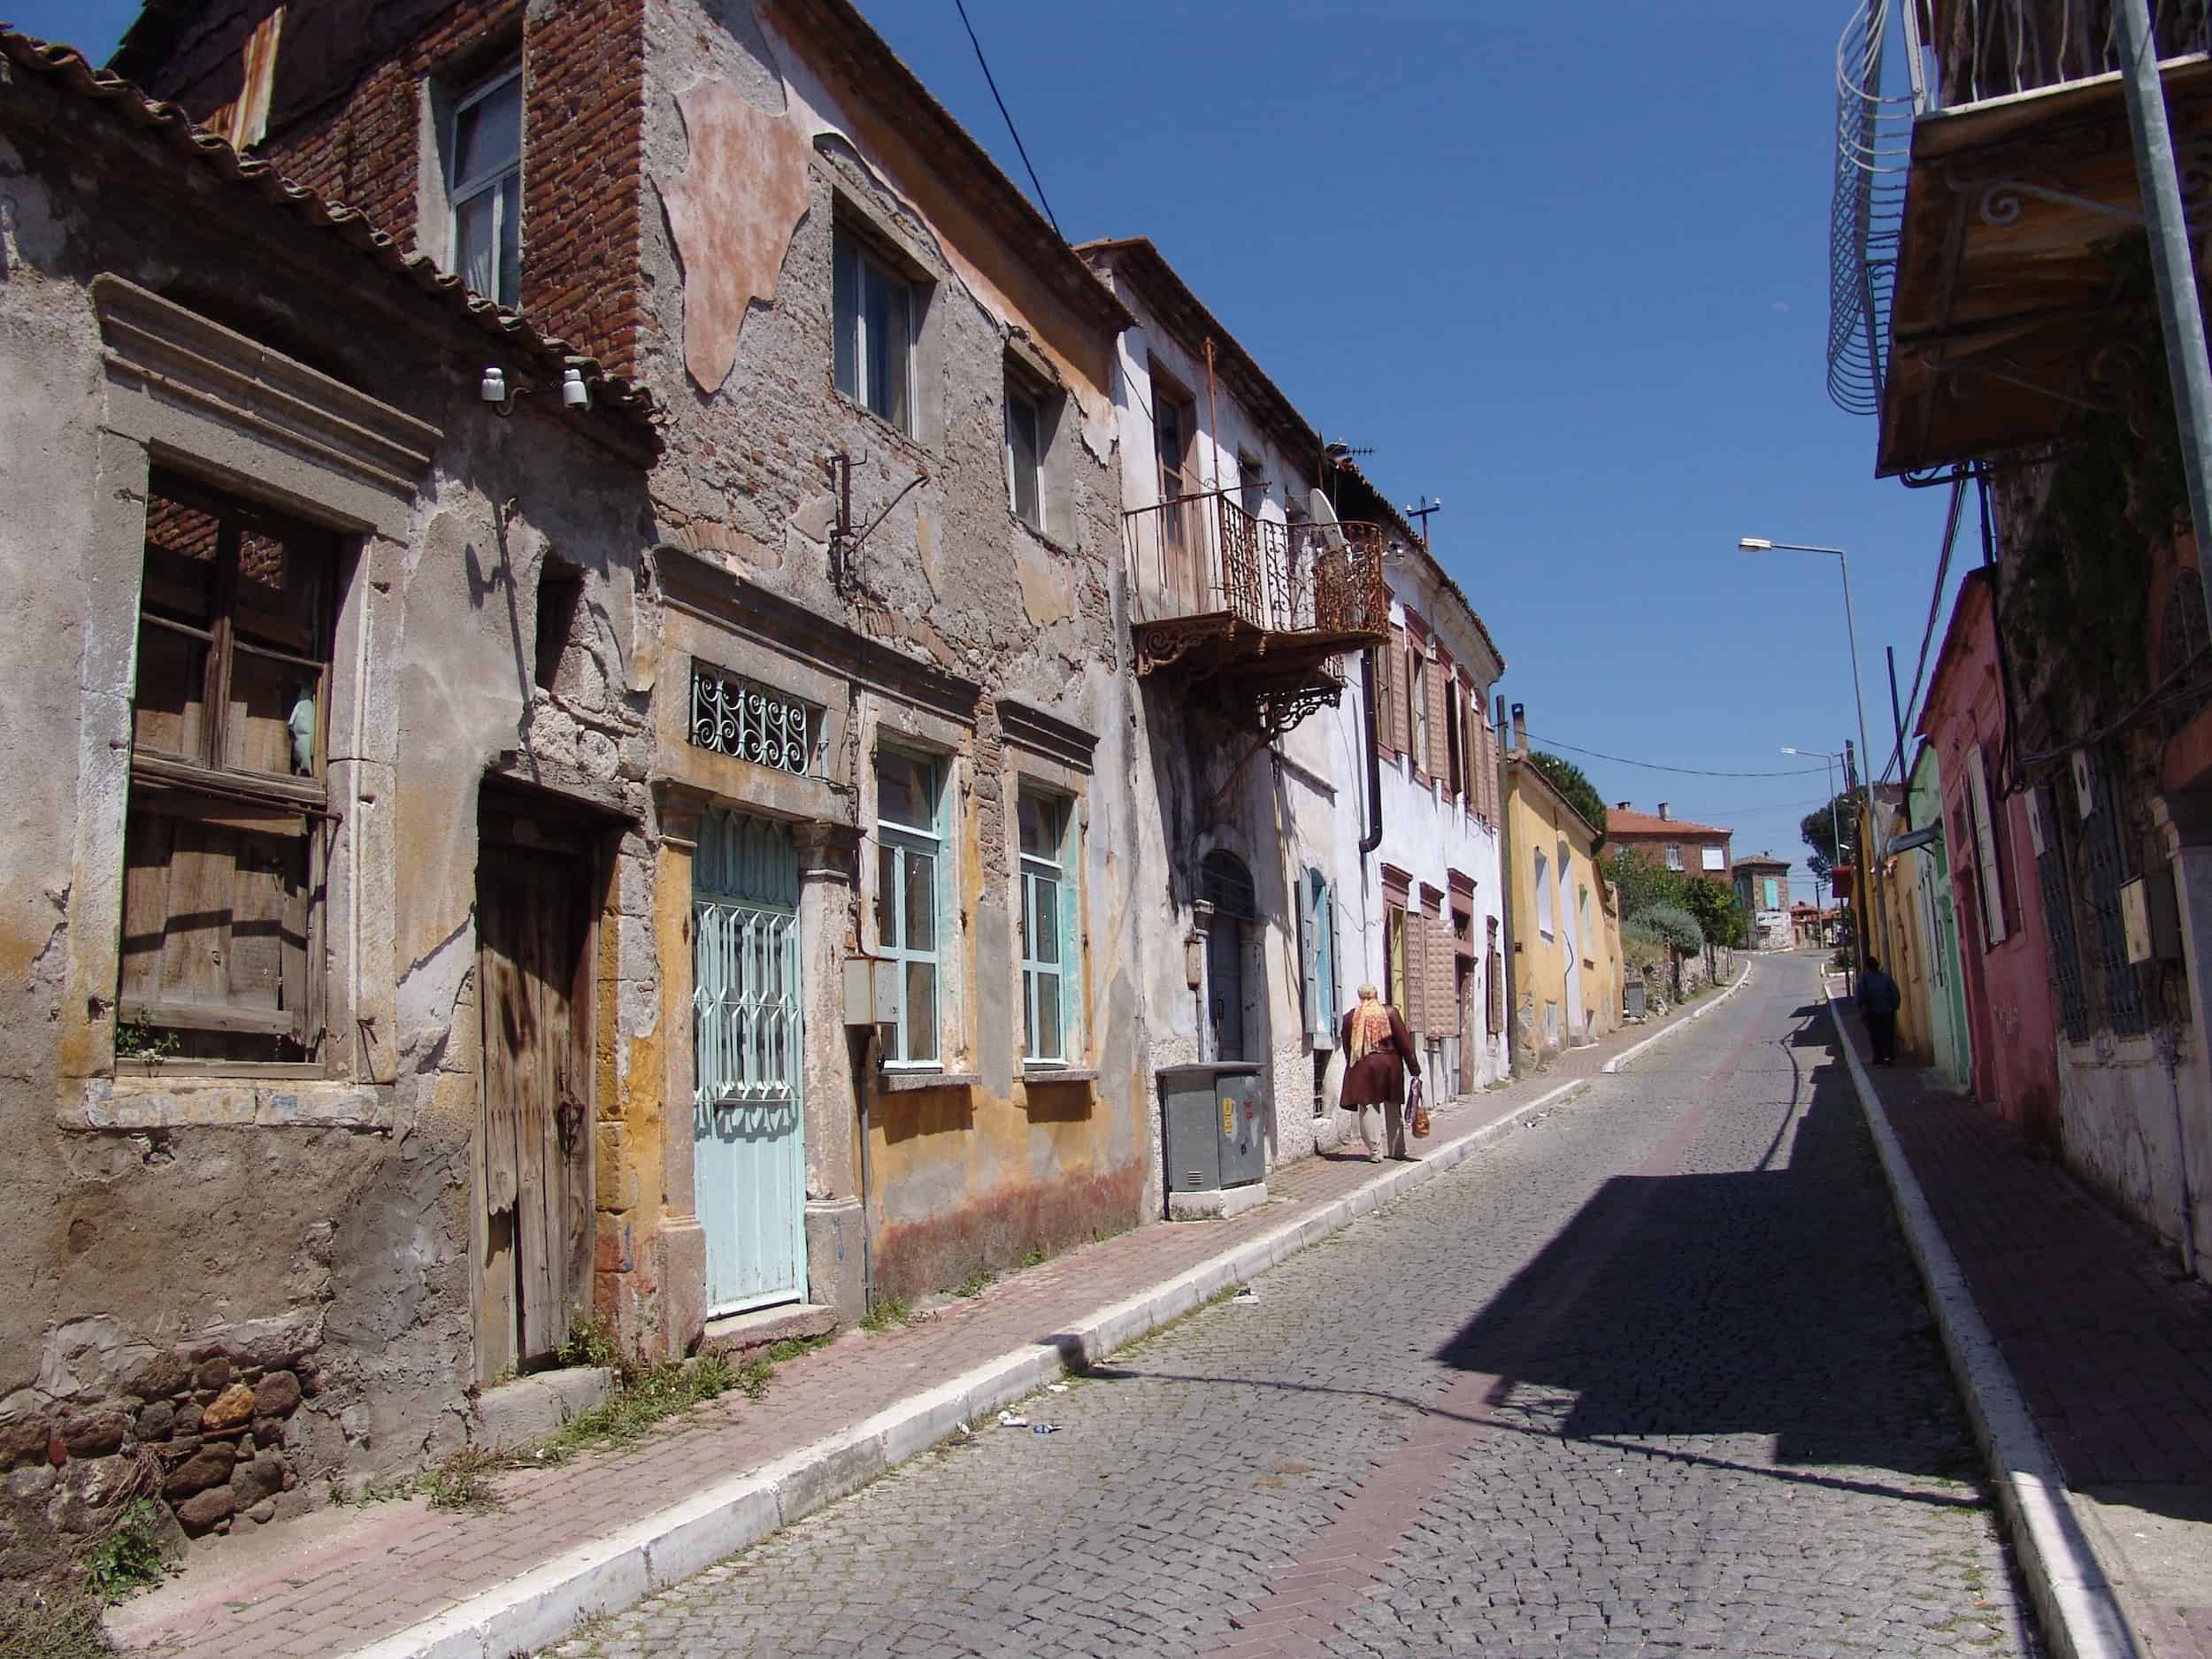 A street in Kurtuluş in Bergama, Turkey